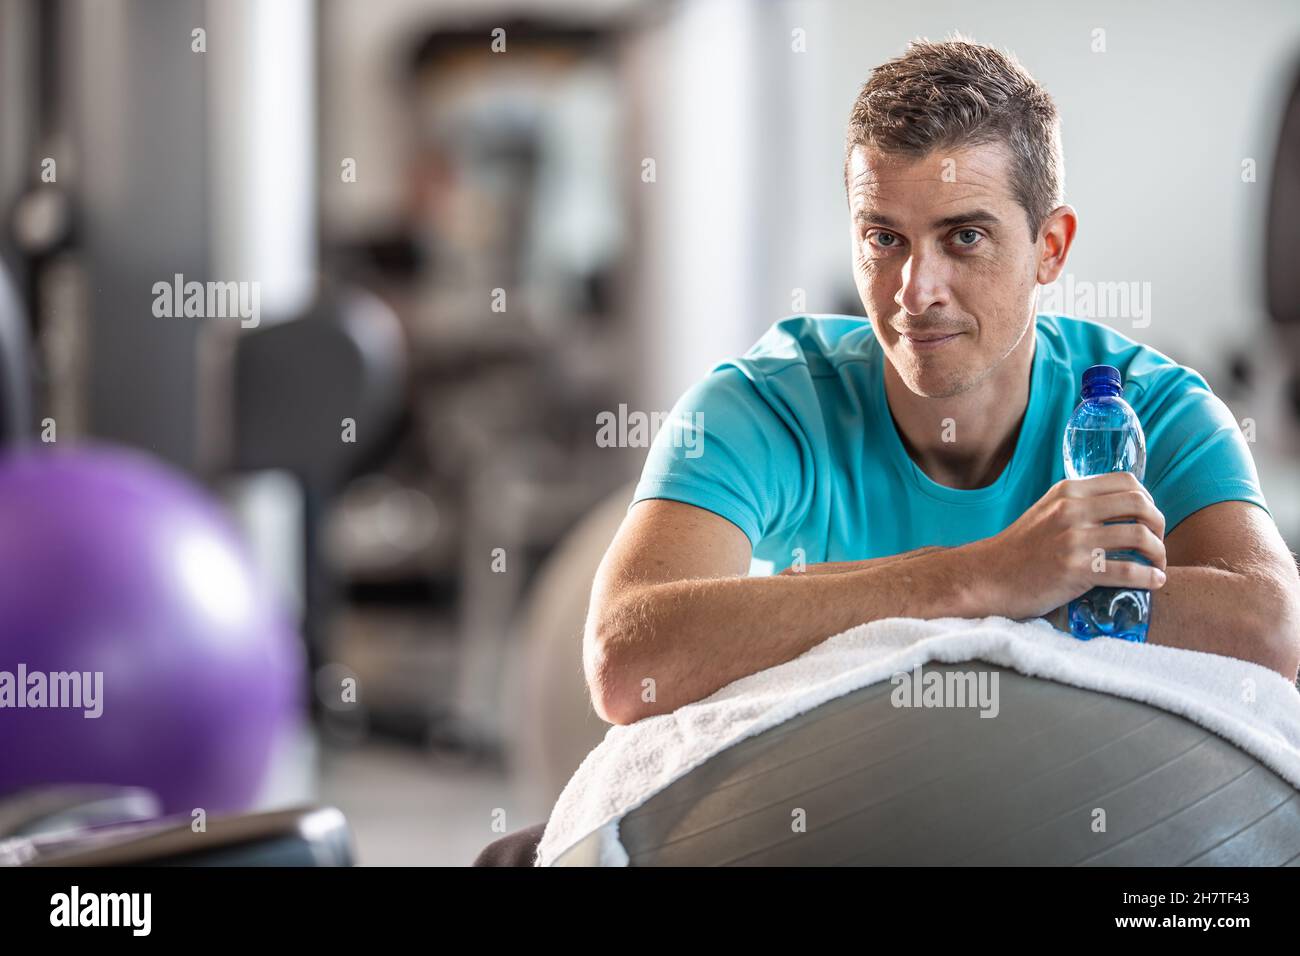 Hombre sosteniendo la botella de agua descansa dentro del gimnasio durante una sesión de entrenamiento. Foto de stock